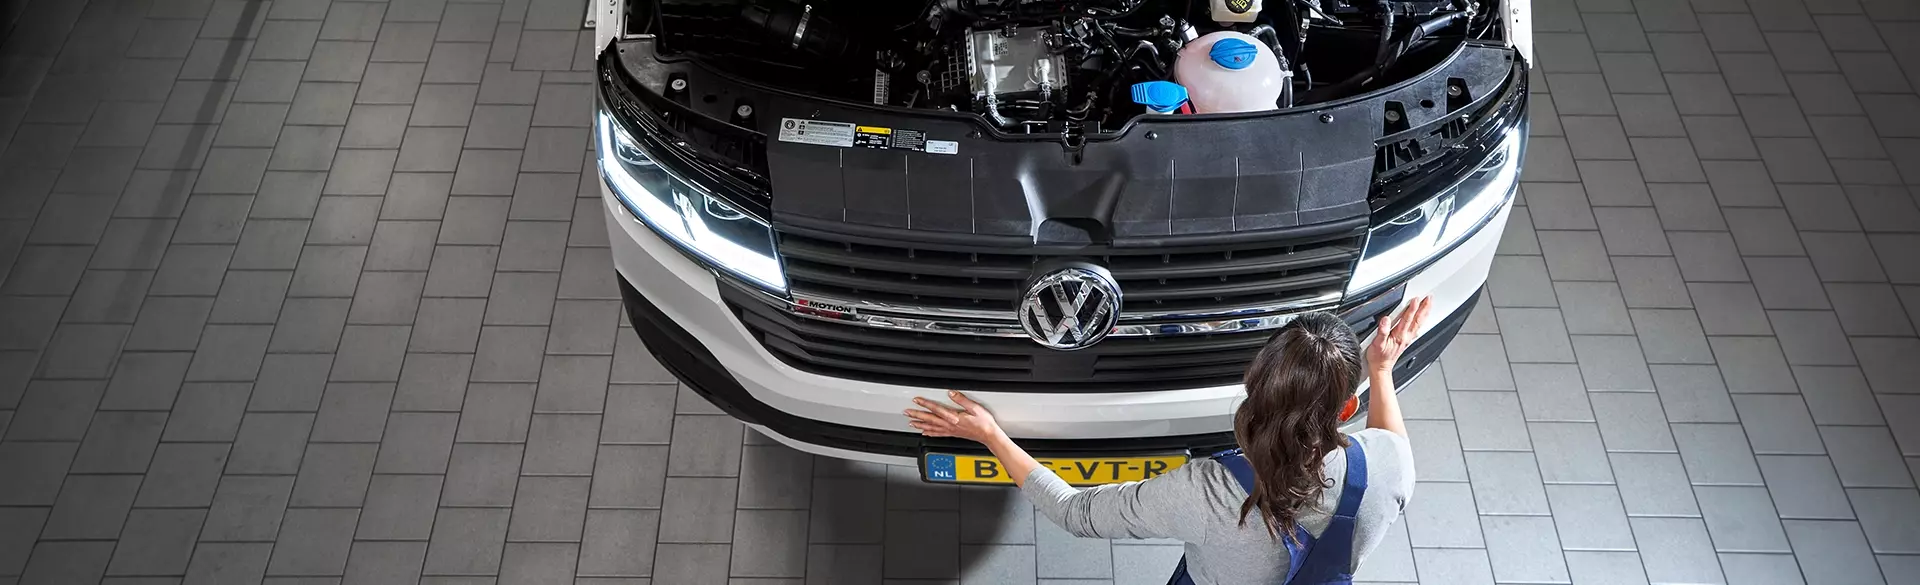 7 servicebeloften VW bedrijfswagens